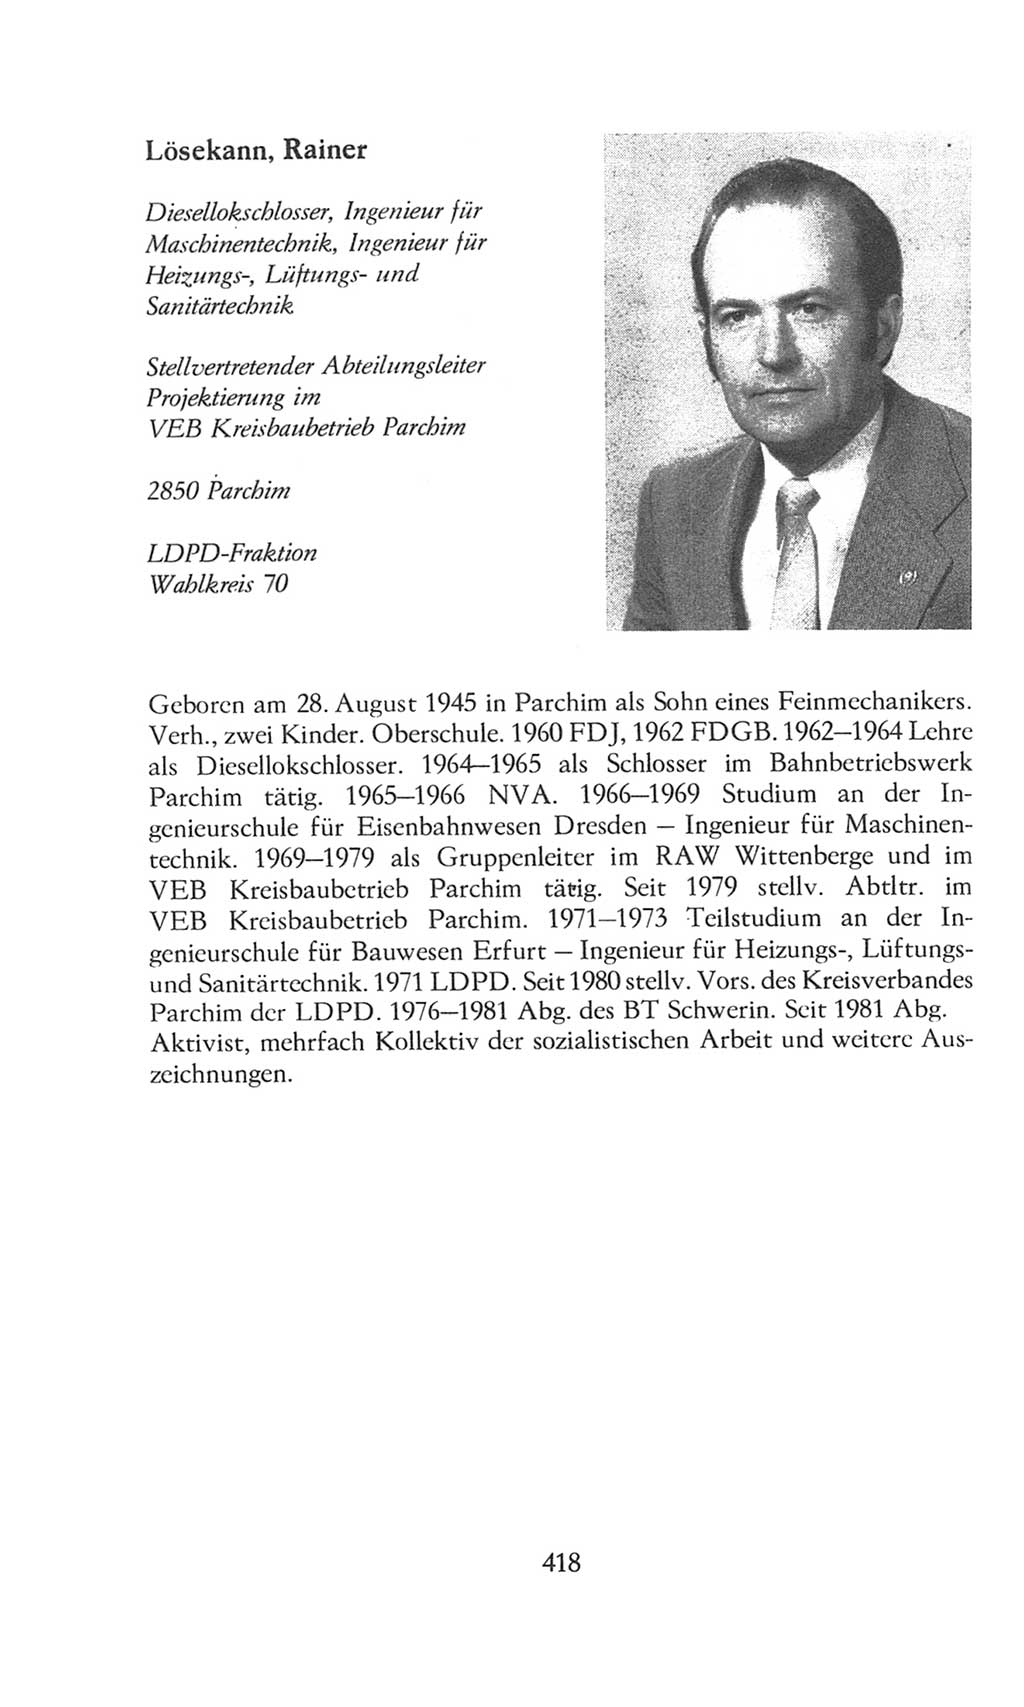 Volkskammer (VK) der Deutschen Demokratischen Republik (DDR), 8. Wahlperiode 1981-1986, Seite 418 (VK. DDR 8. WP. 1981-1986, S. 418)